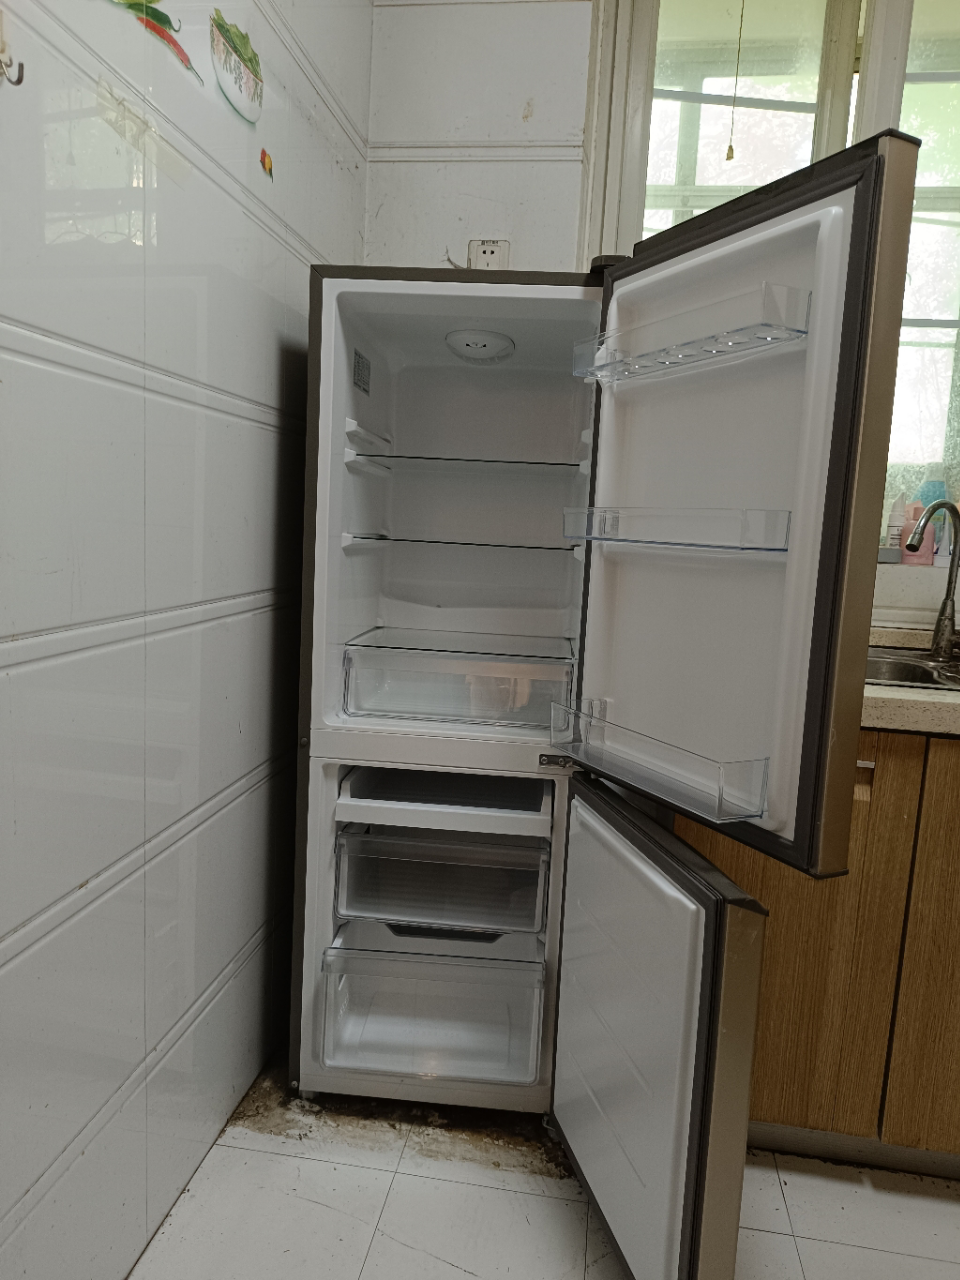 海尔(Haier)178升两门冰箱 小巧不占地 占地不足0.3m² 低音环保 租房小冰箱 BCD-178TMPT晒单图